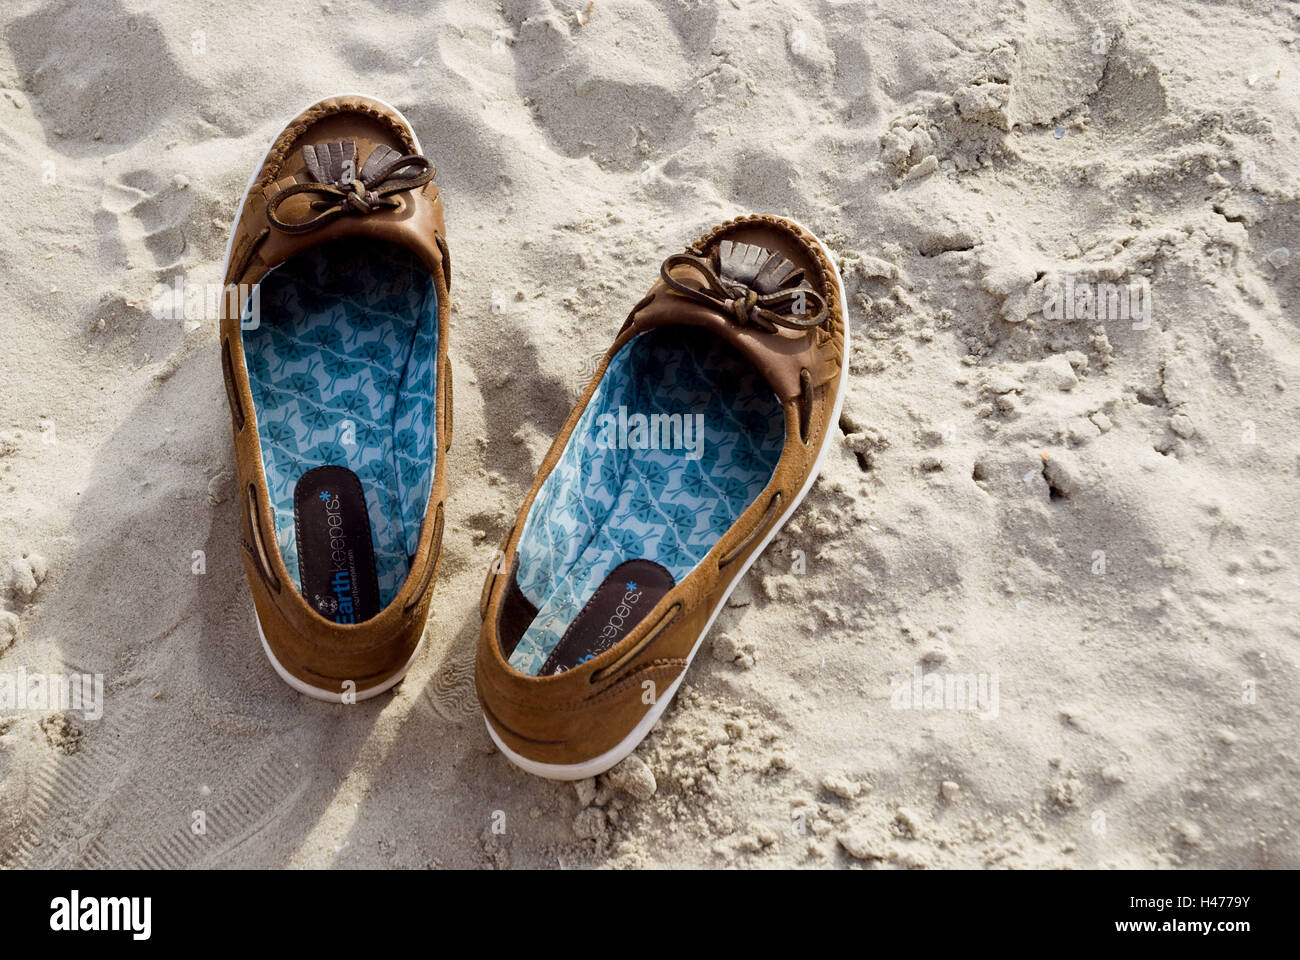 Scarpe sulla spiaggia, Foto Stock